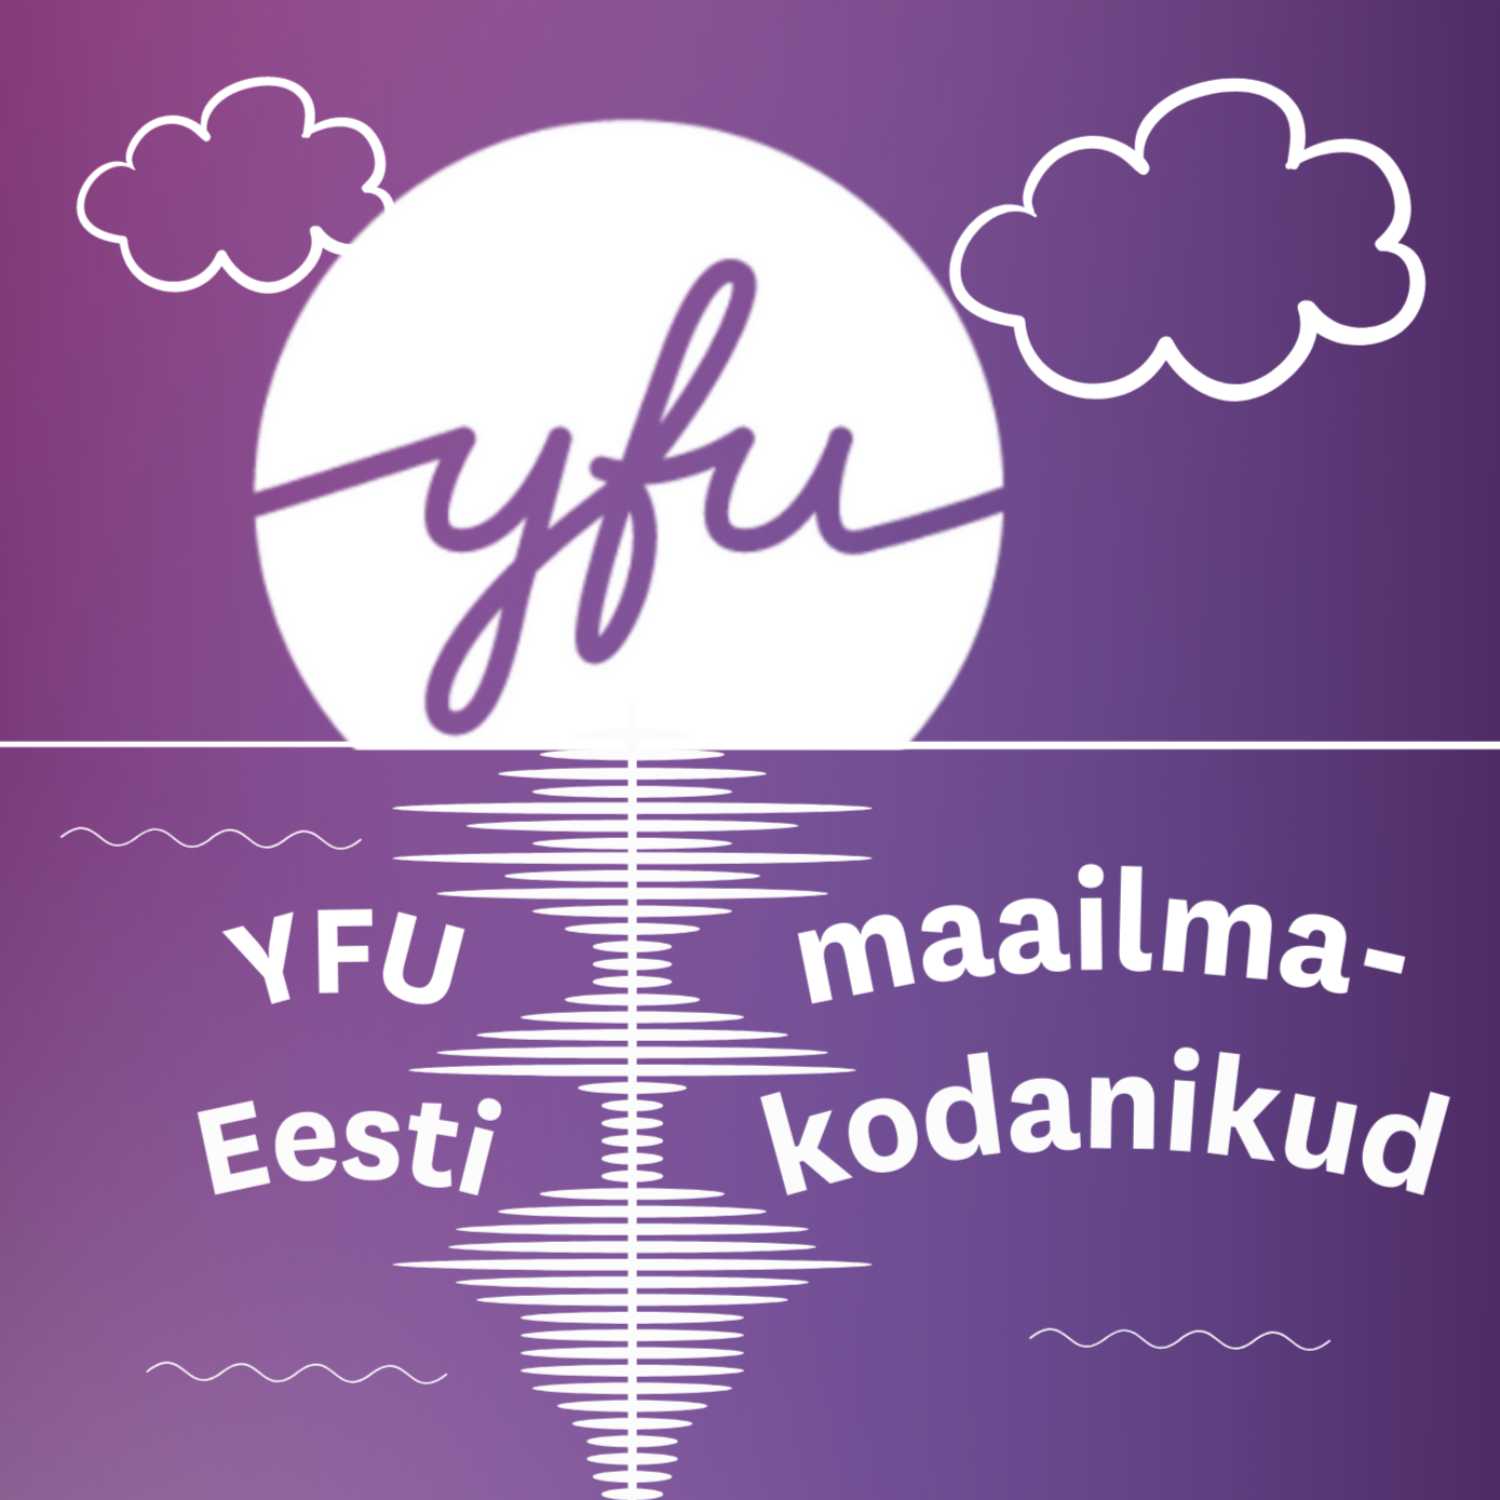 YFU Eesti maailmakodanike podcast!